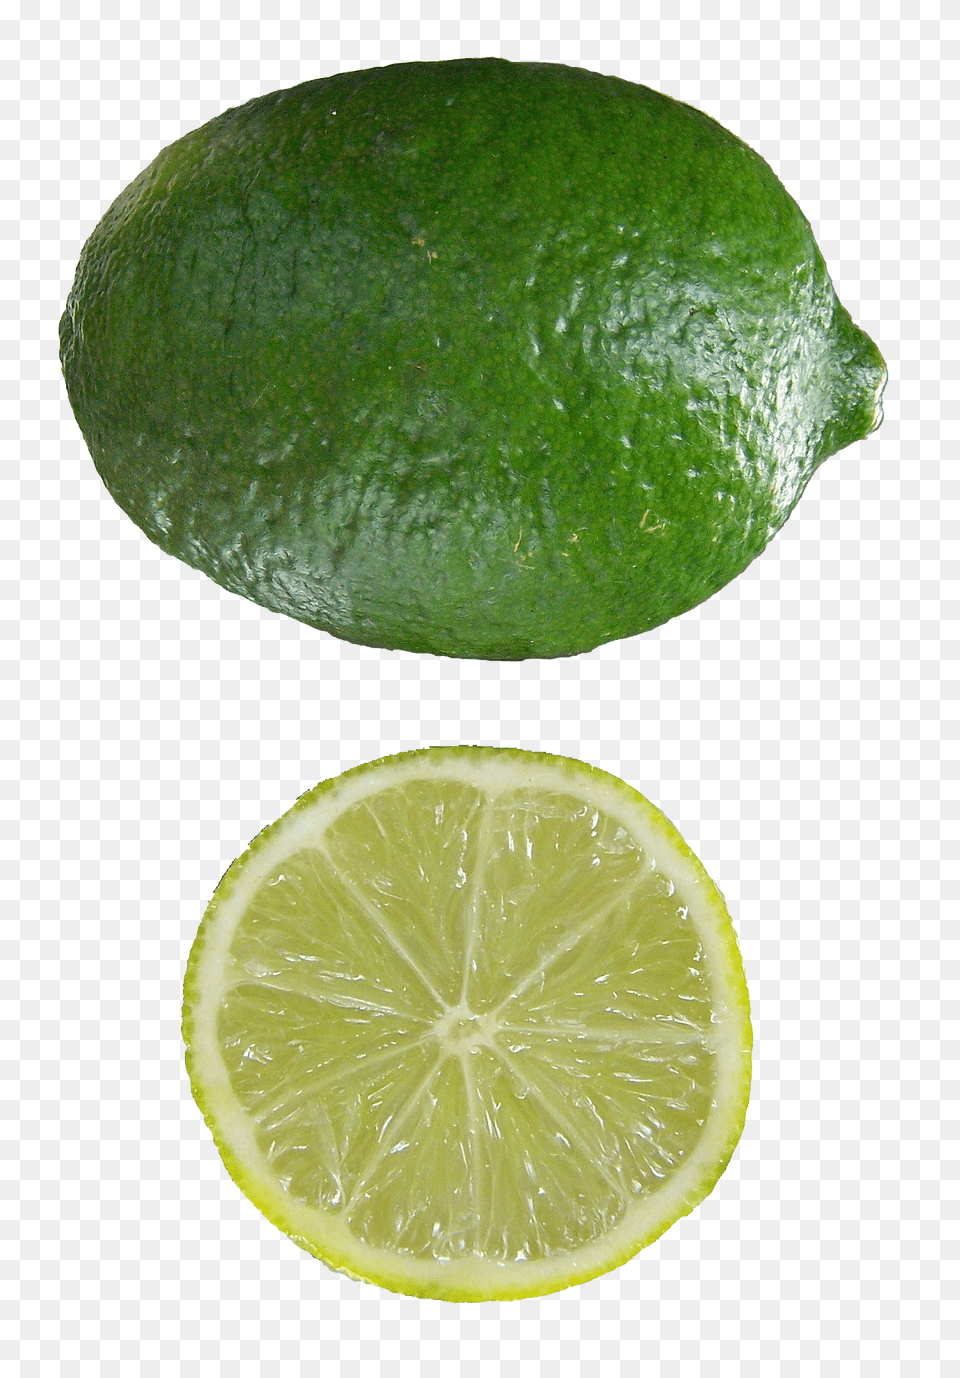 Lime, Citrus Fruit, Food, Fruit, Plant Png